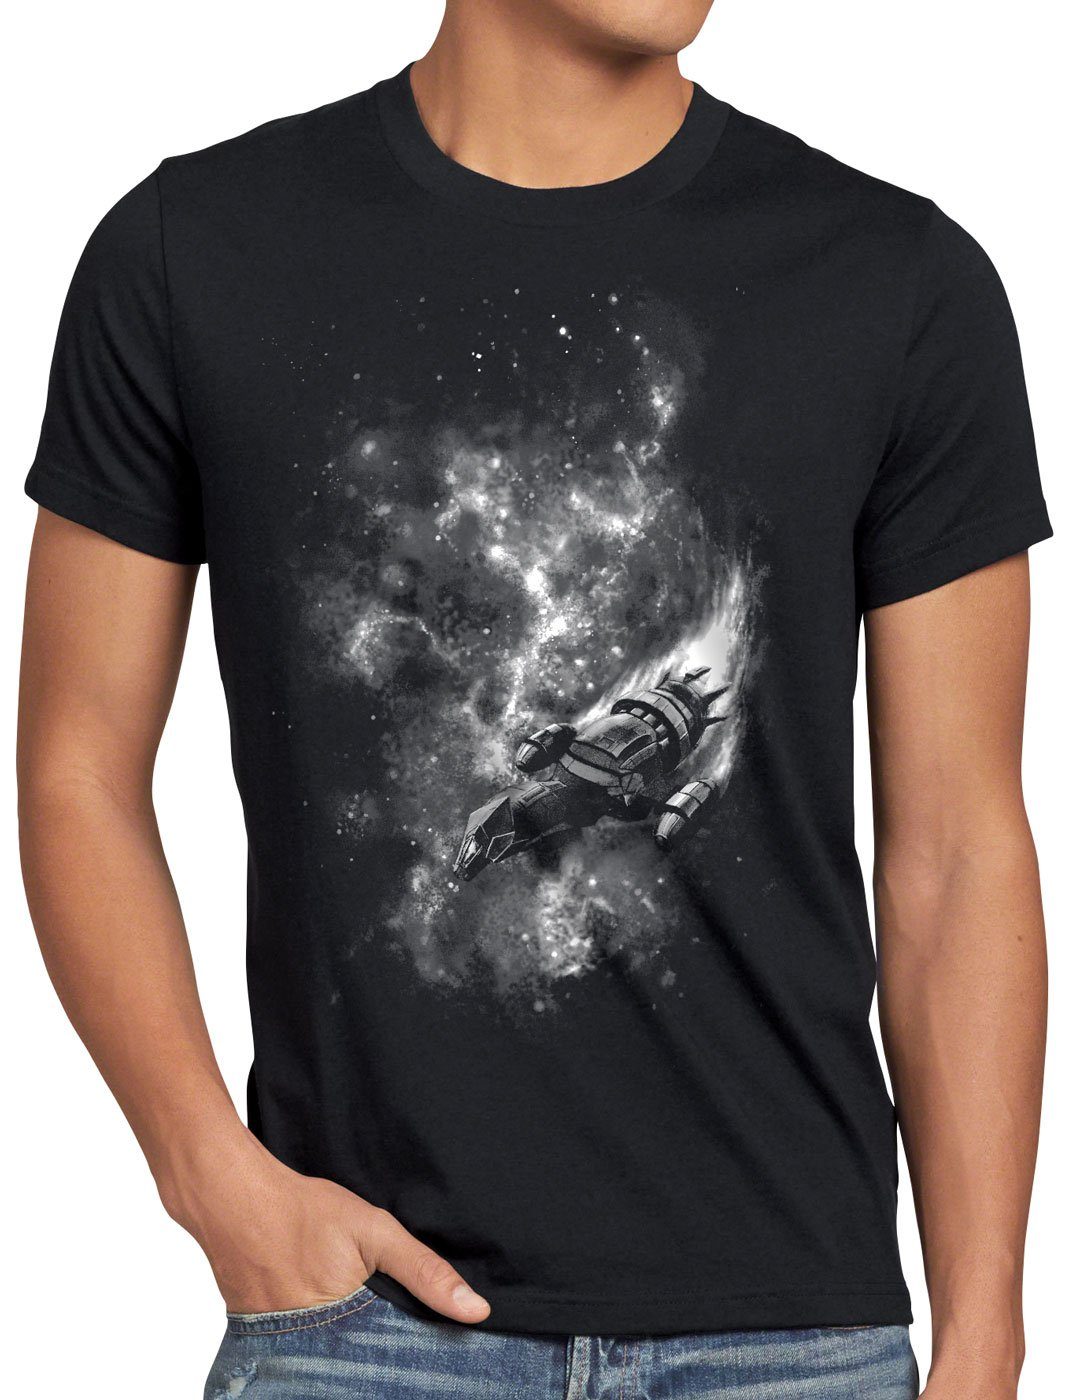 style3 Print-Shirt Herren T-Shirt Firefly in Space serenserenity alleanza nave spazialey allianz raumschiff